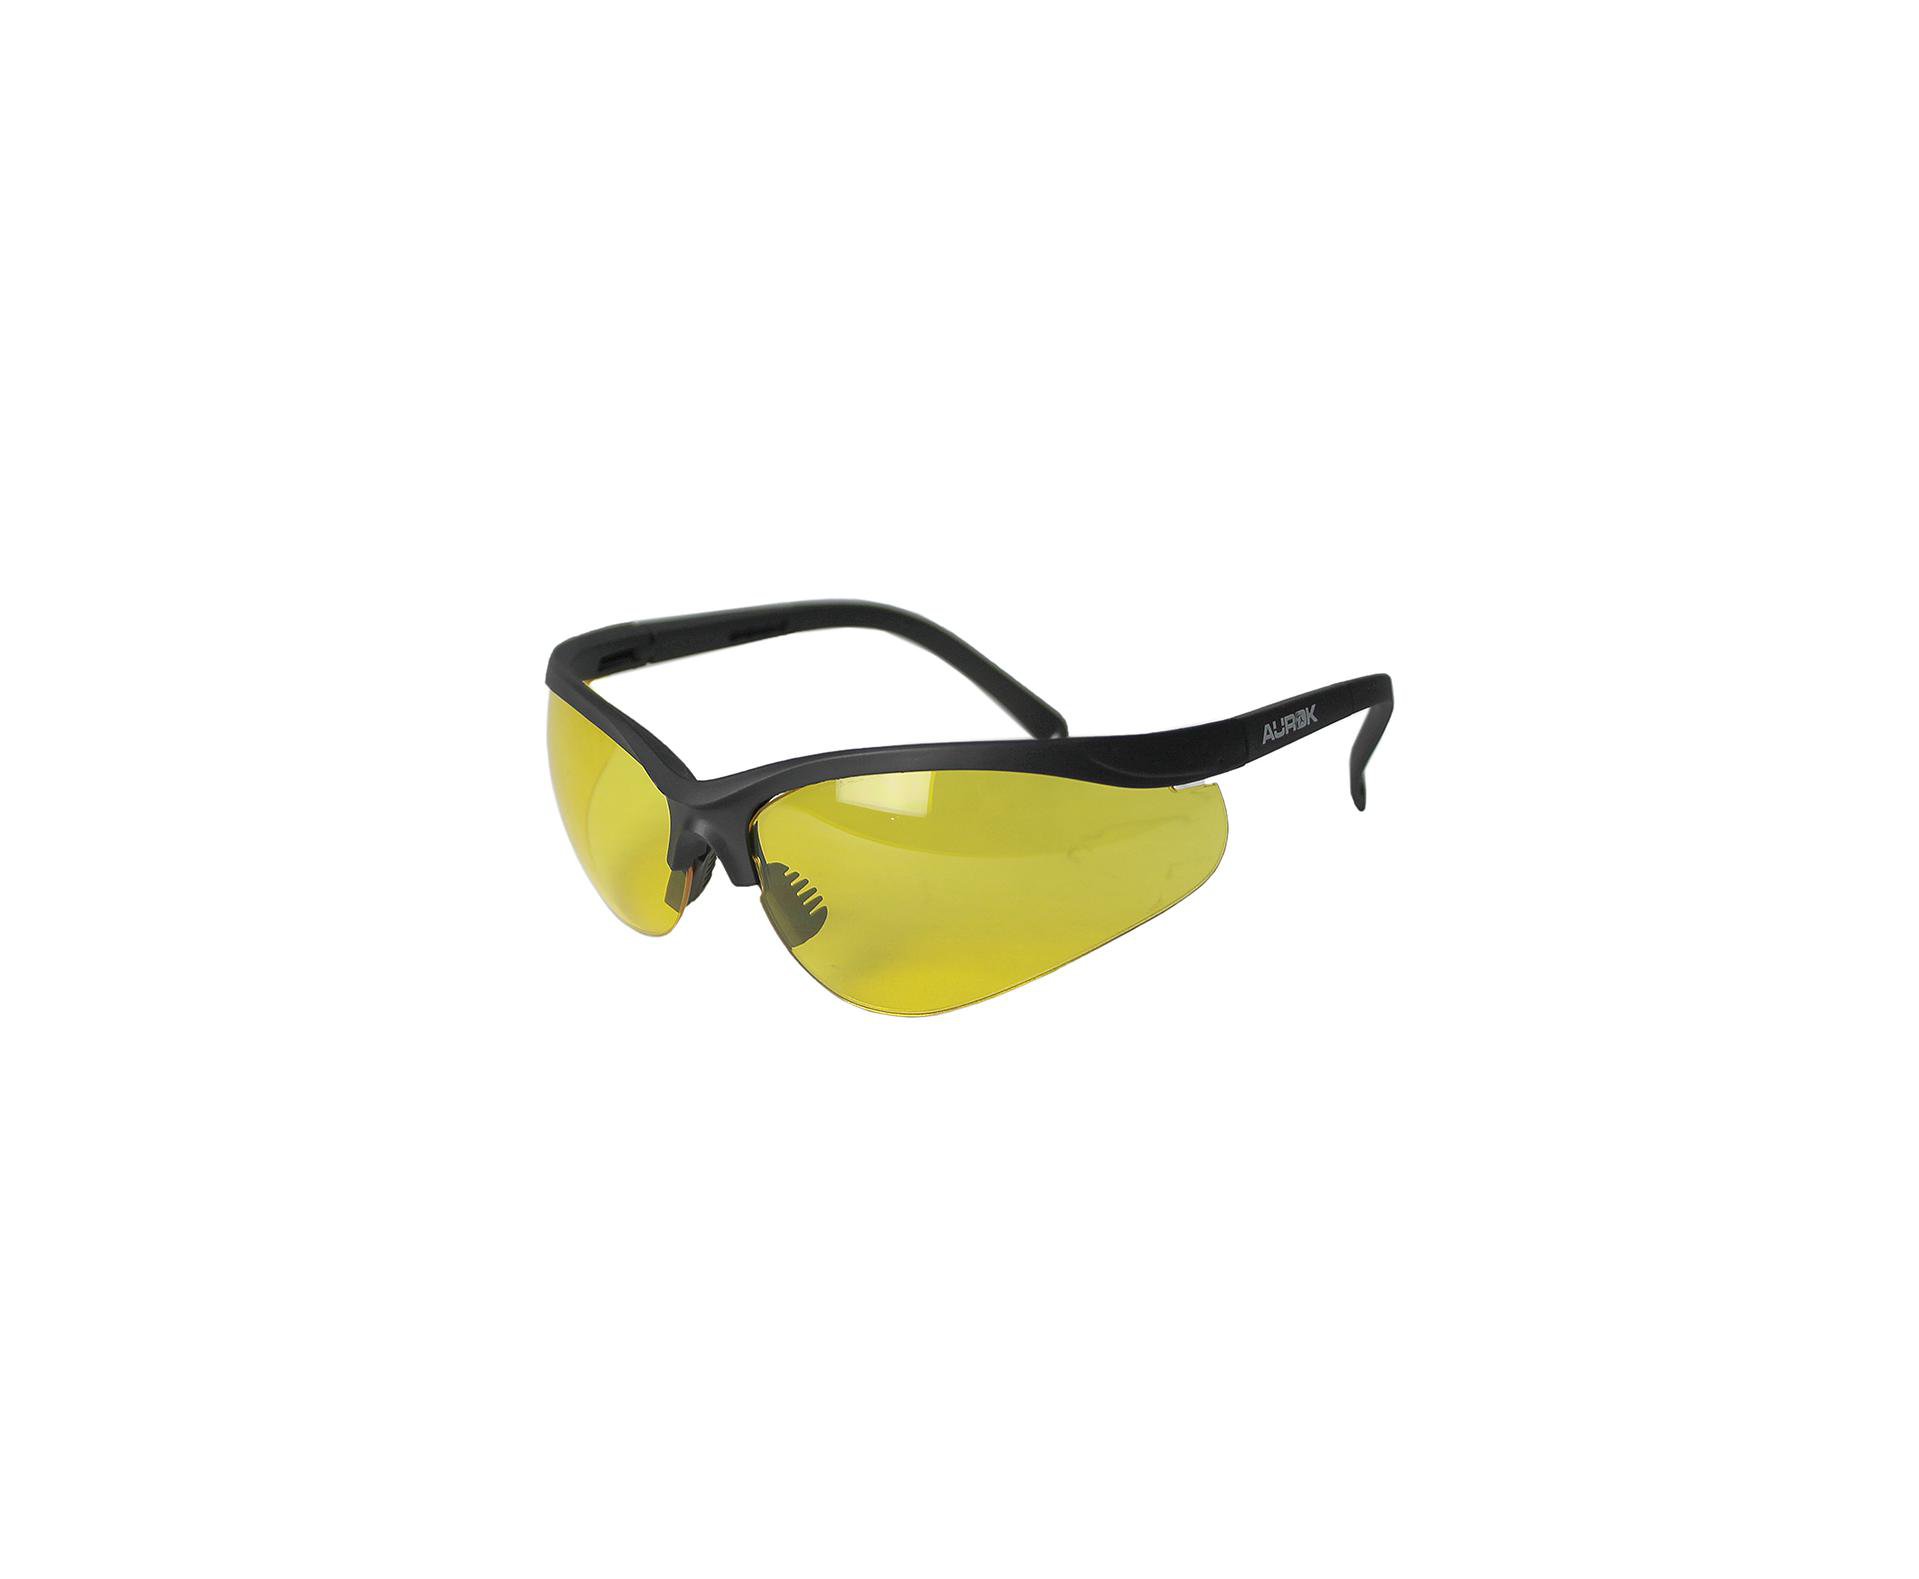 óculos De Segurança Para Tiro Esportivo Aurok Amarelo